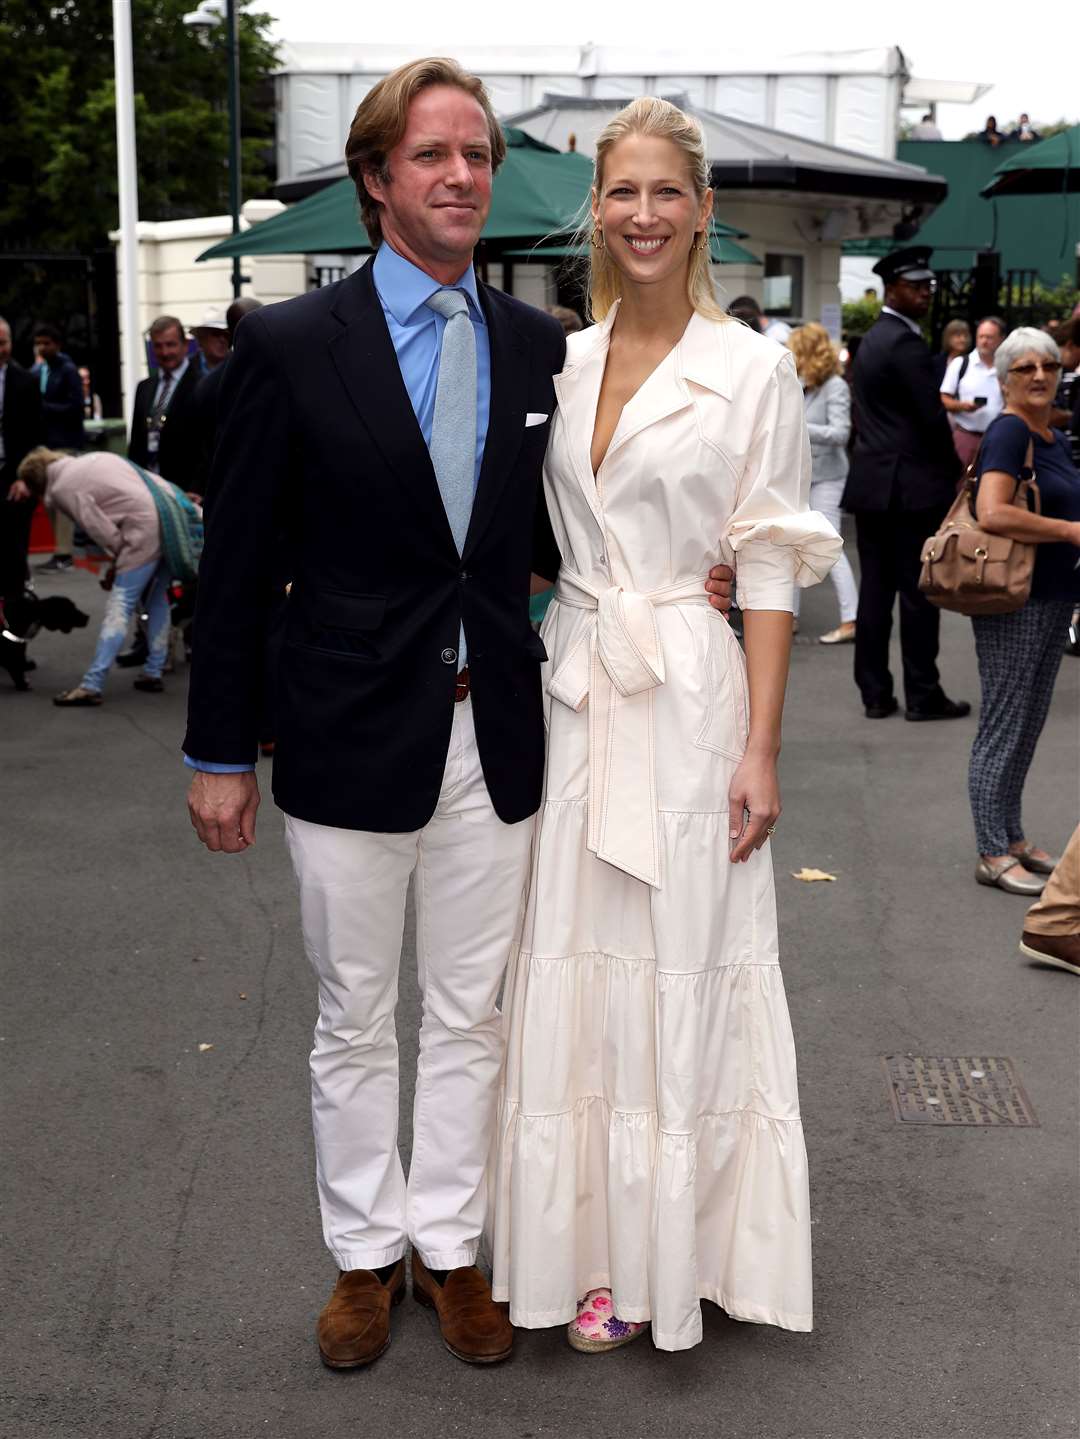 Thomas Kingston and Lady Gabriella Kingston at Wimbledon in 2019 (Philip Toscano/PA)